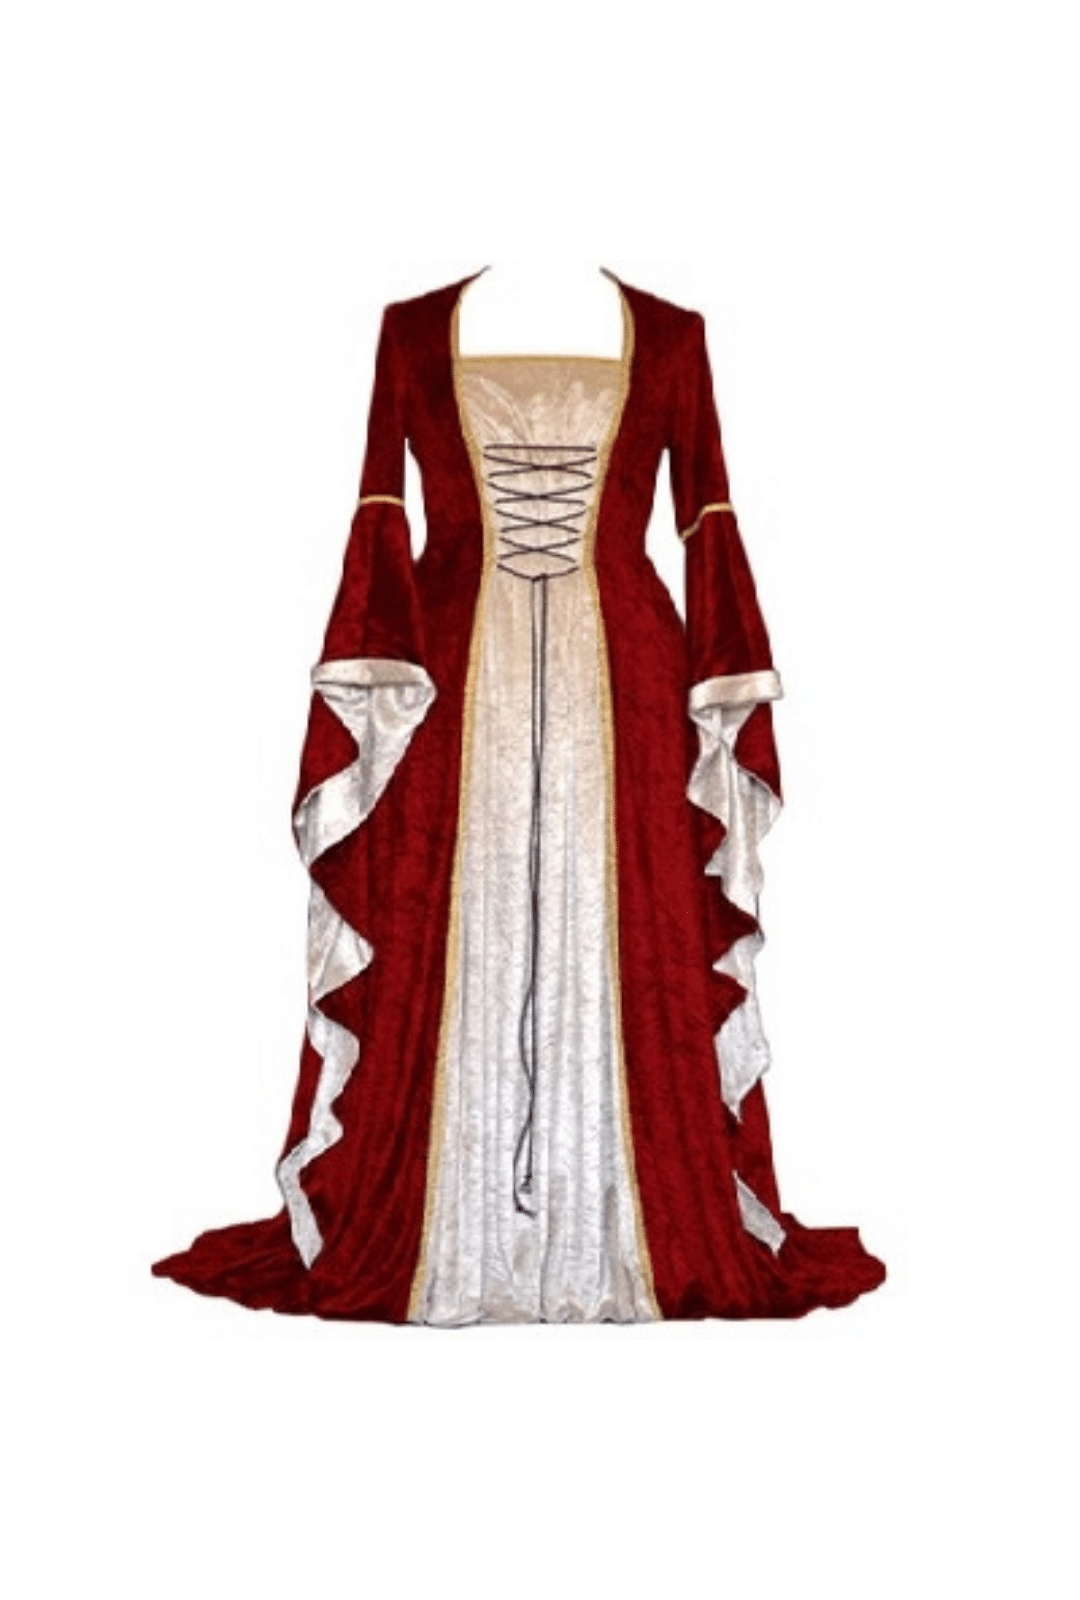 Red and Gold Velvet Medieval Dress